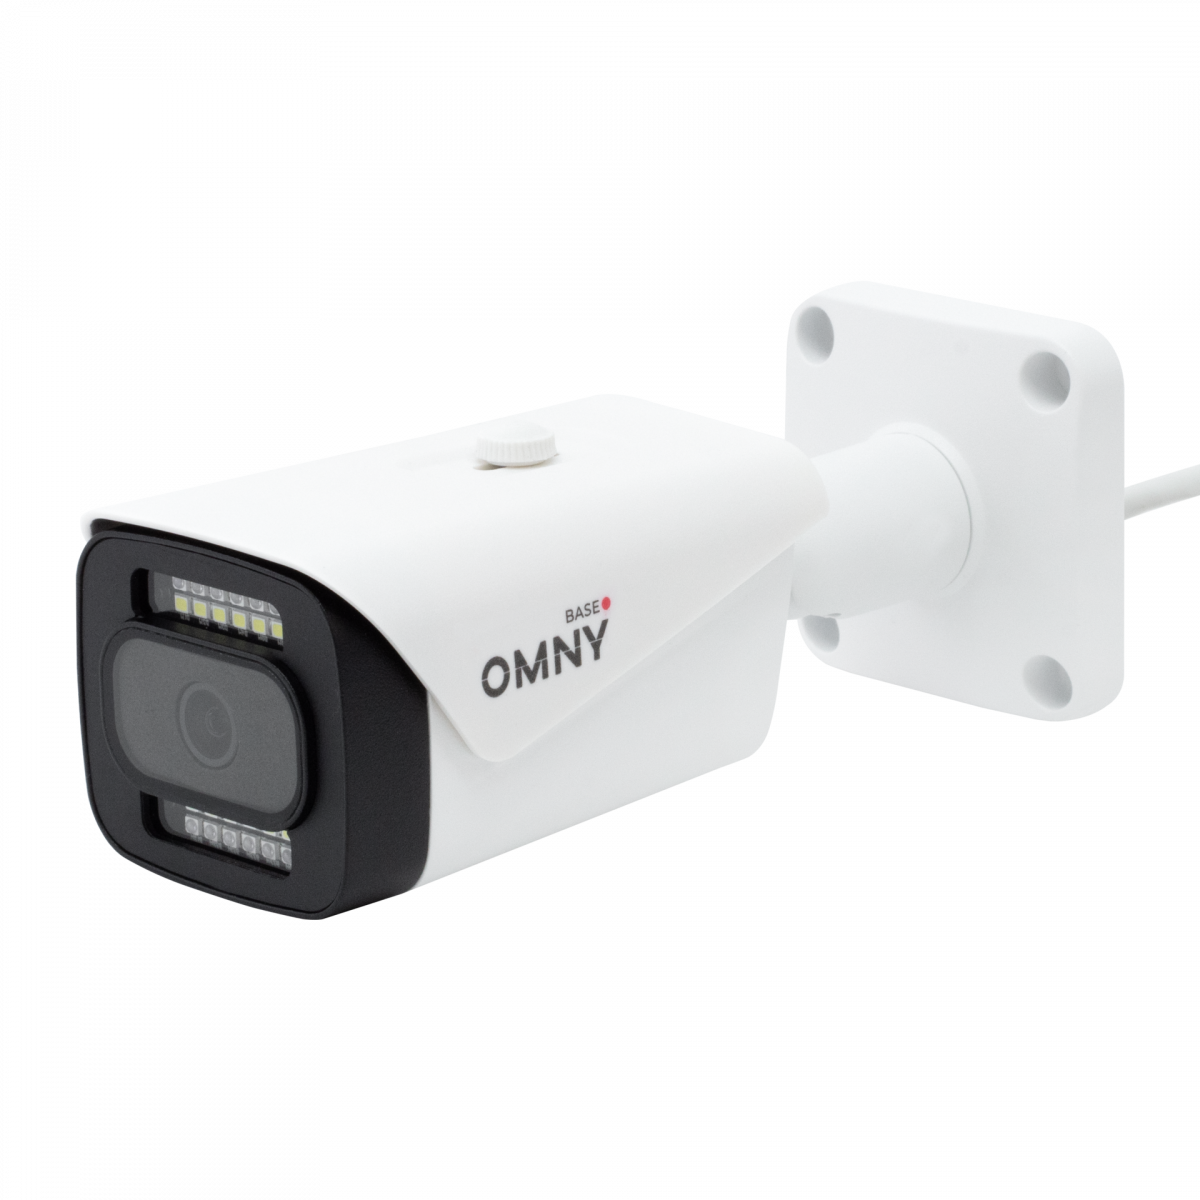 Камера сетевая буллет 5Мп OMNY BASE miniBullet5E-WDS-SDL-C 28 с двойной подсветкой и микрофоном